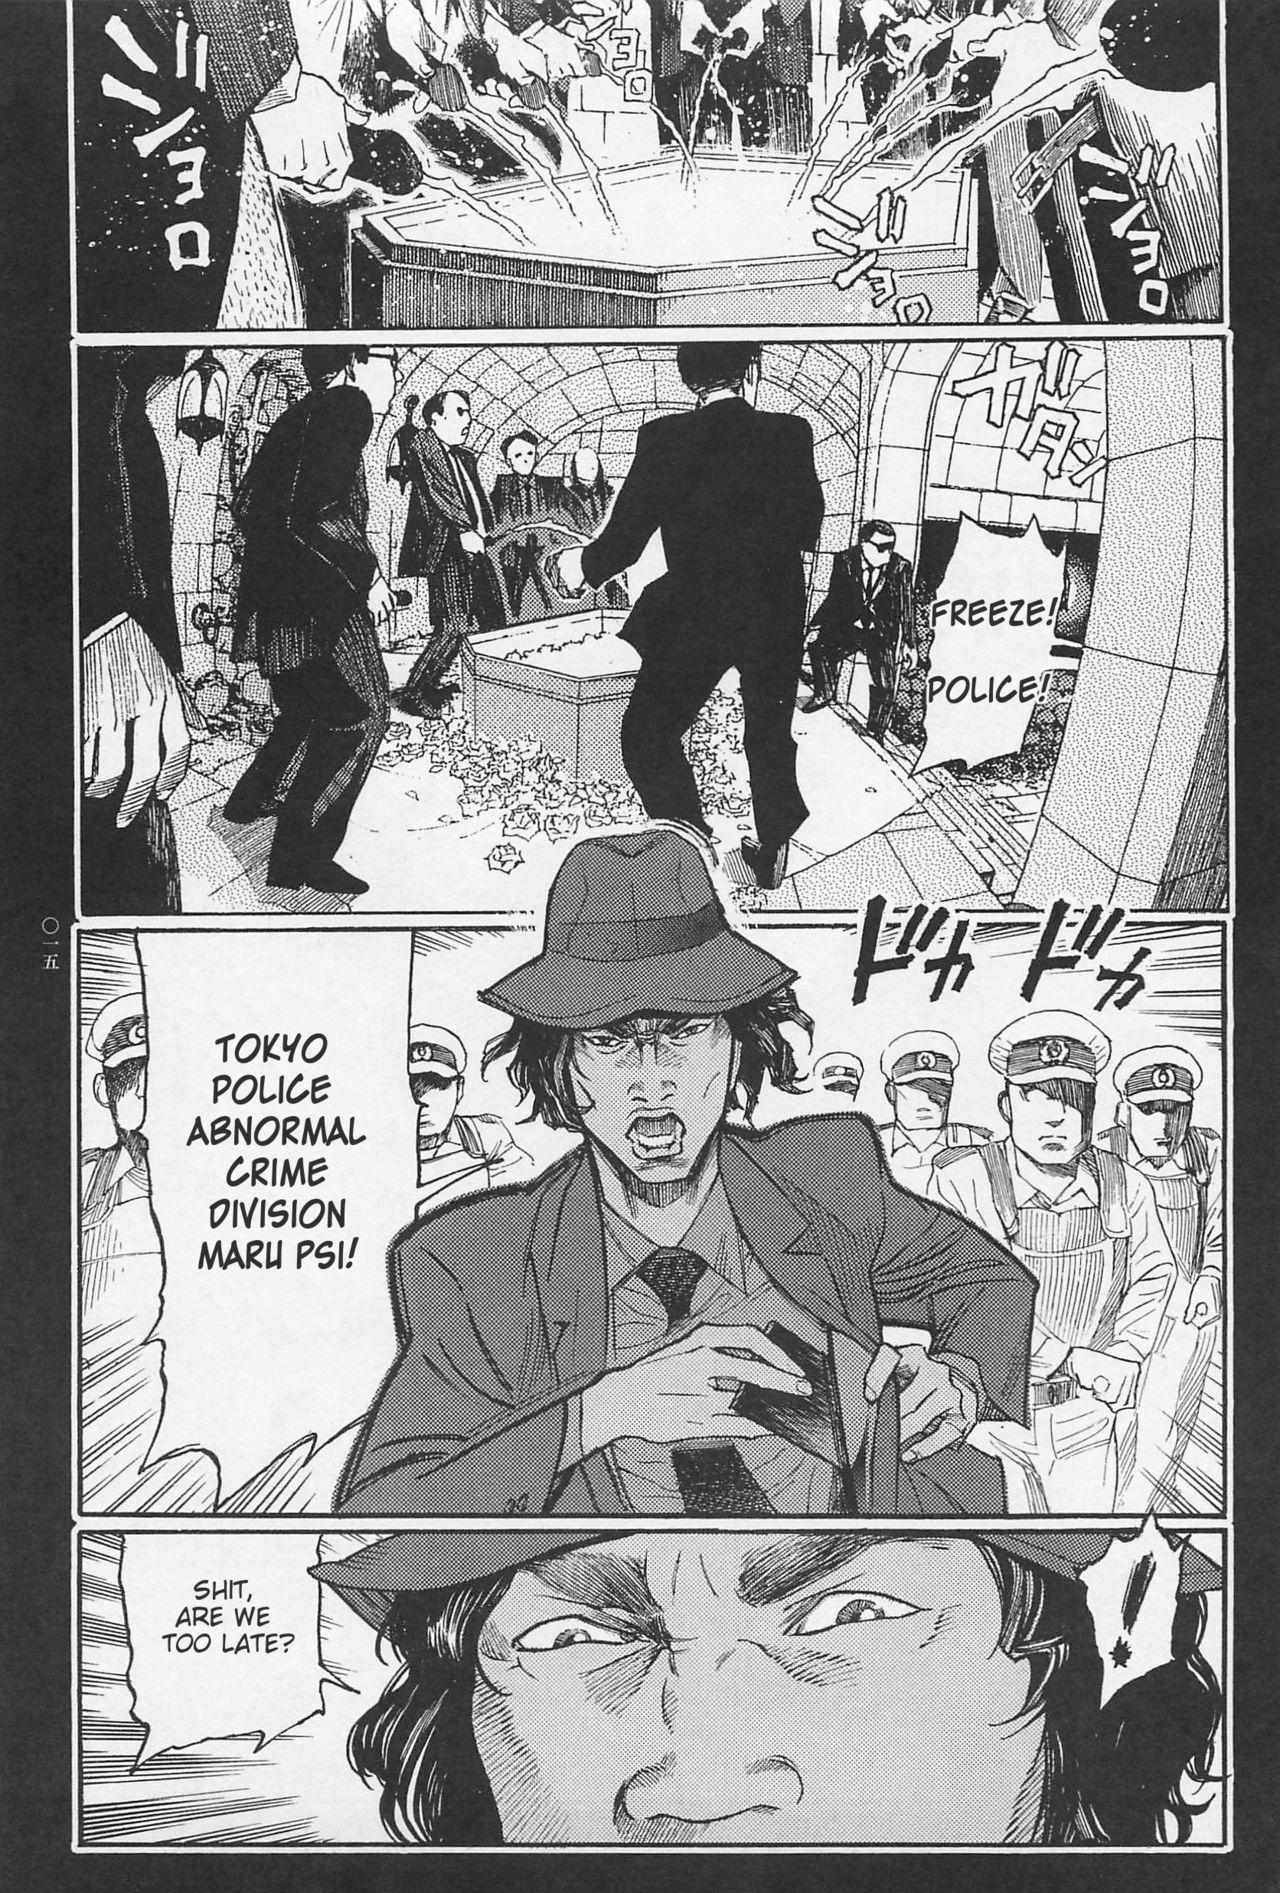 [OHKOSHI Koutarou] - Detective Investigating Bizarre Case (Ryouki Keiji MARUSAI) - [ENGLISH] 16